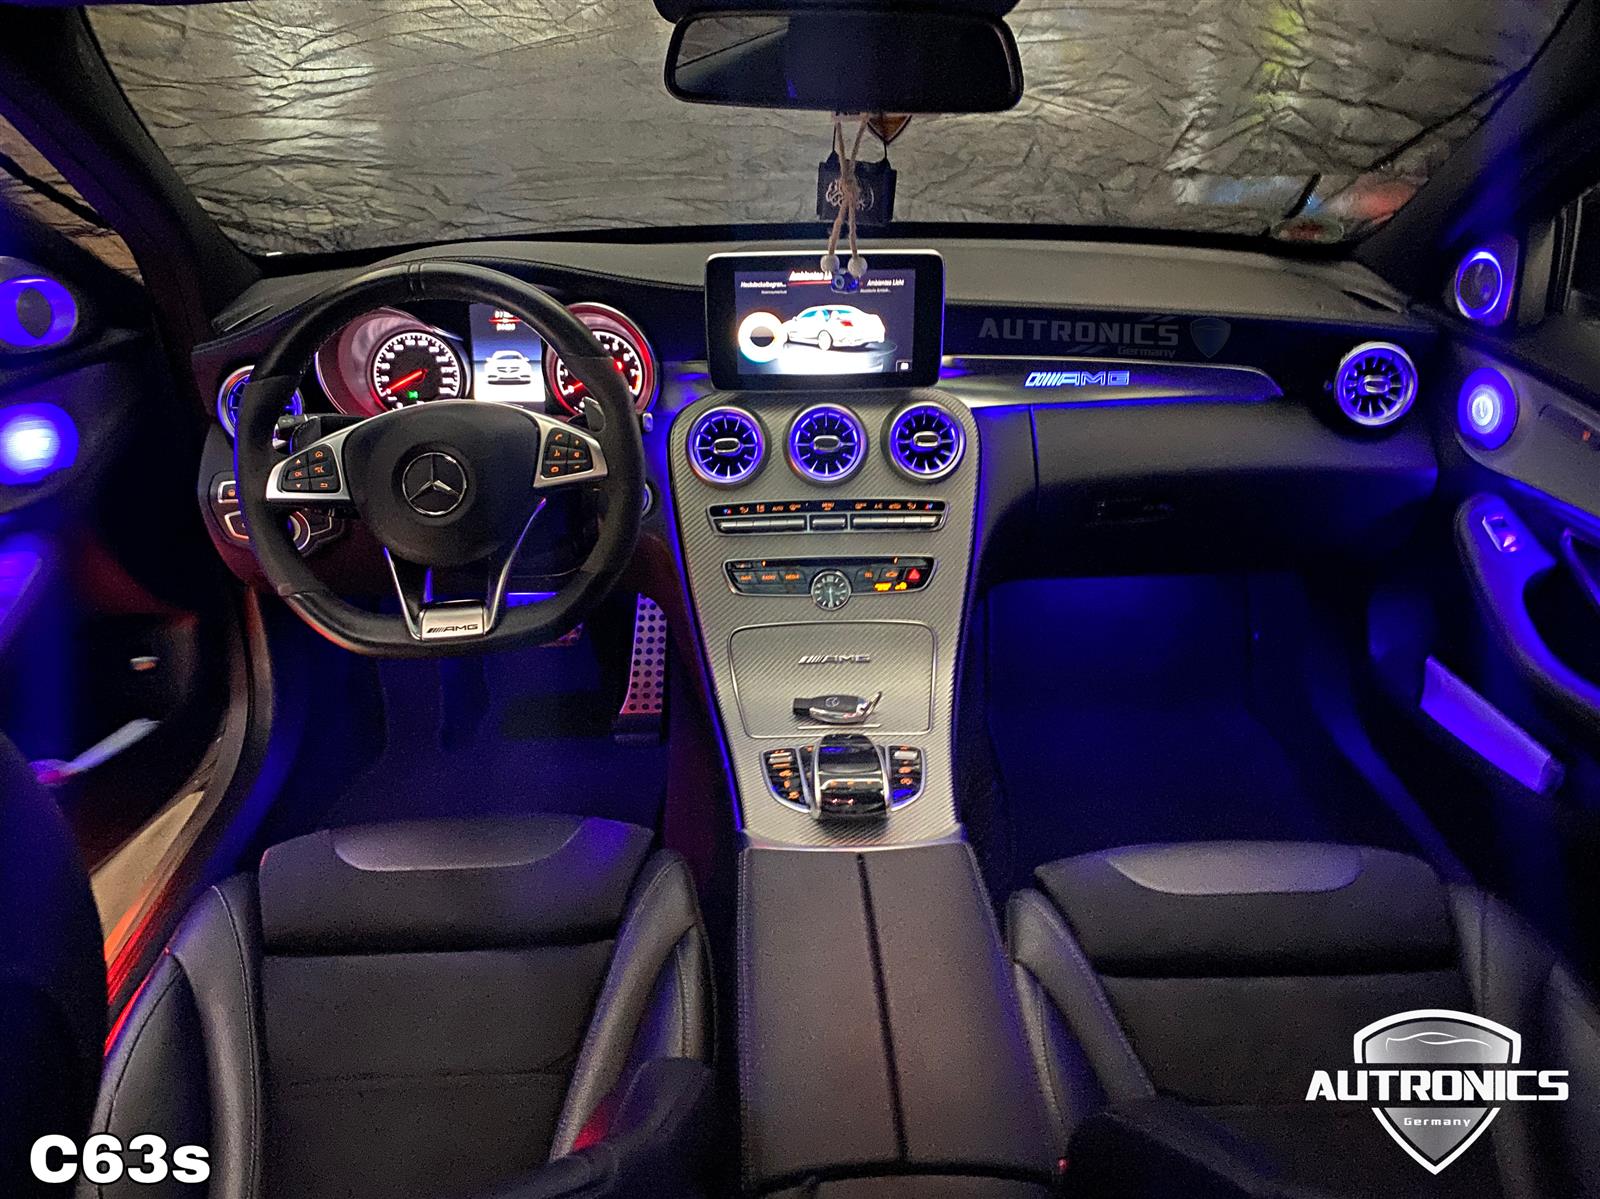 Ambientebeleuchtung Nachrüsten im Auto Beleuchtung Ambiente geeignet für Mercedes Benz C Klasse W205 - 02